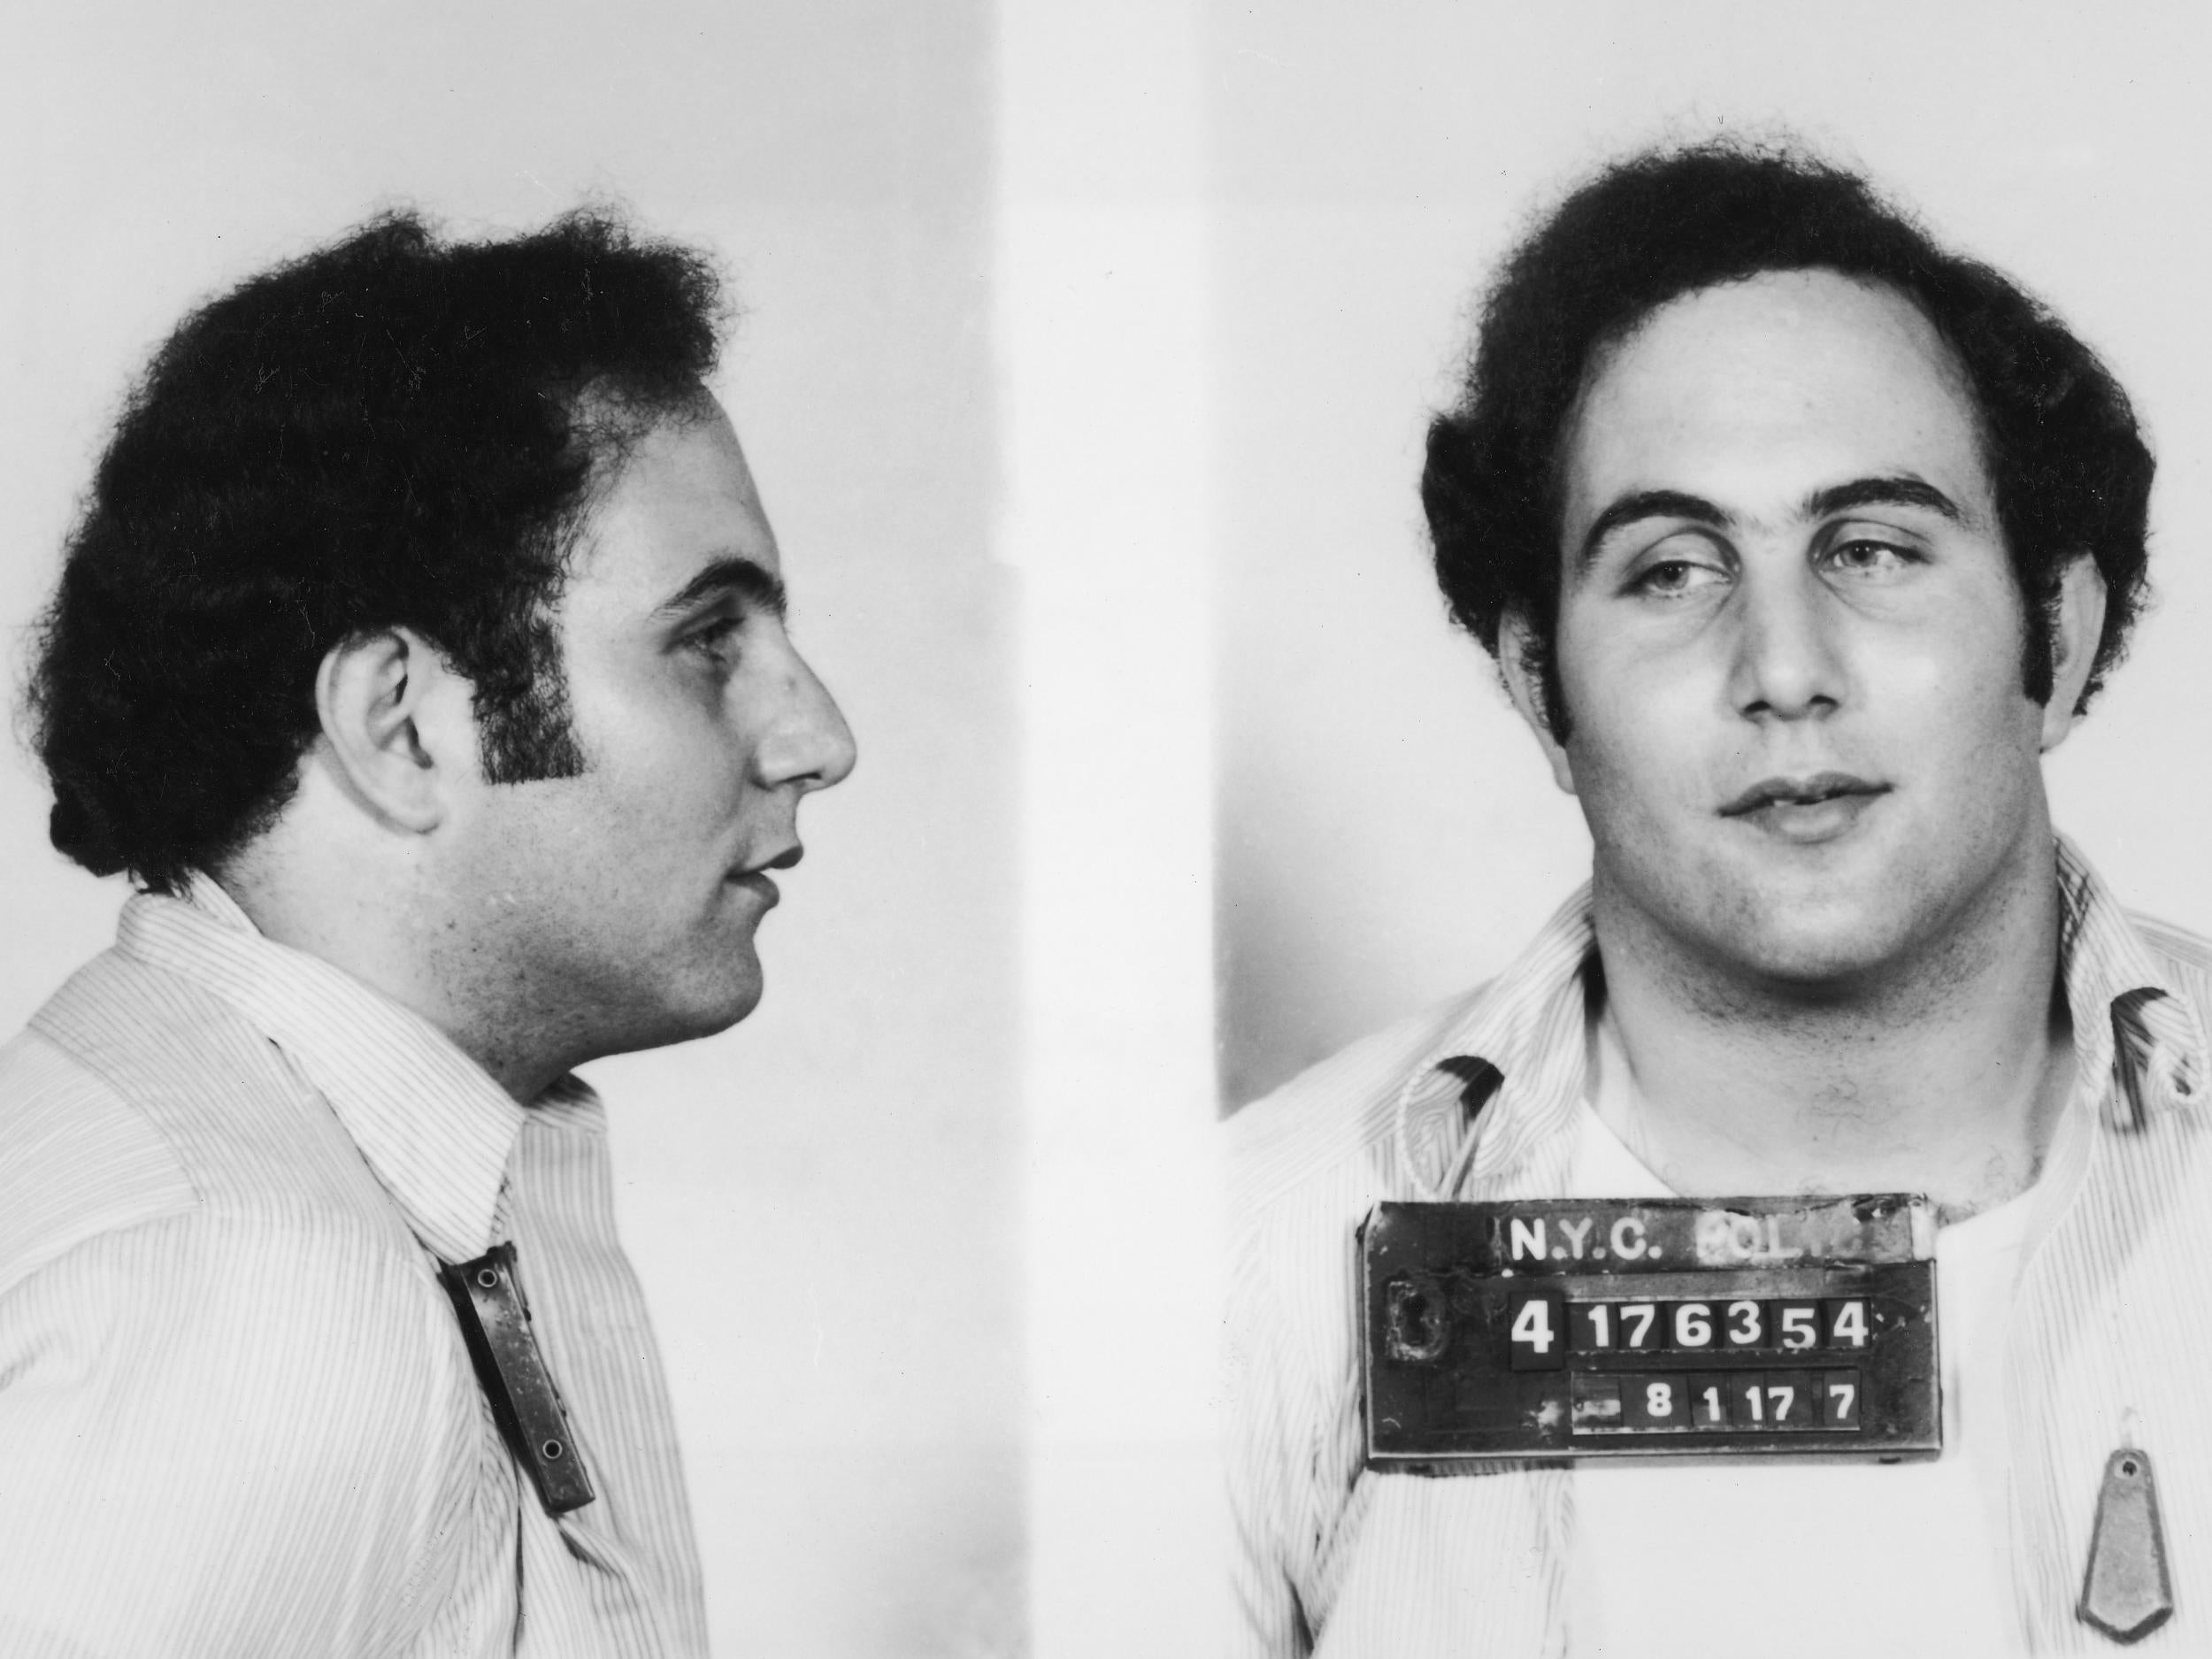 ‘Son of Sam’ killer, David Berkowitz terrorized New York City in the 1970s